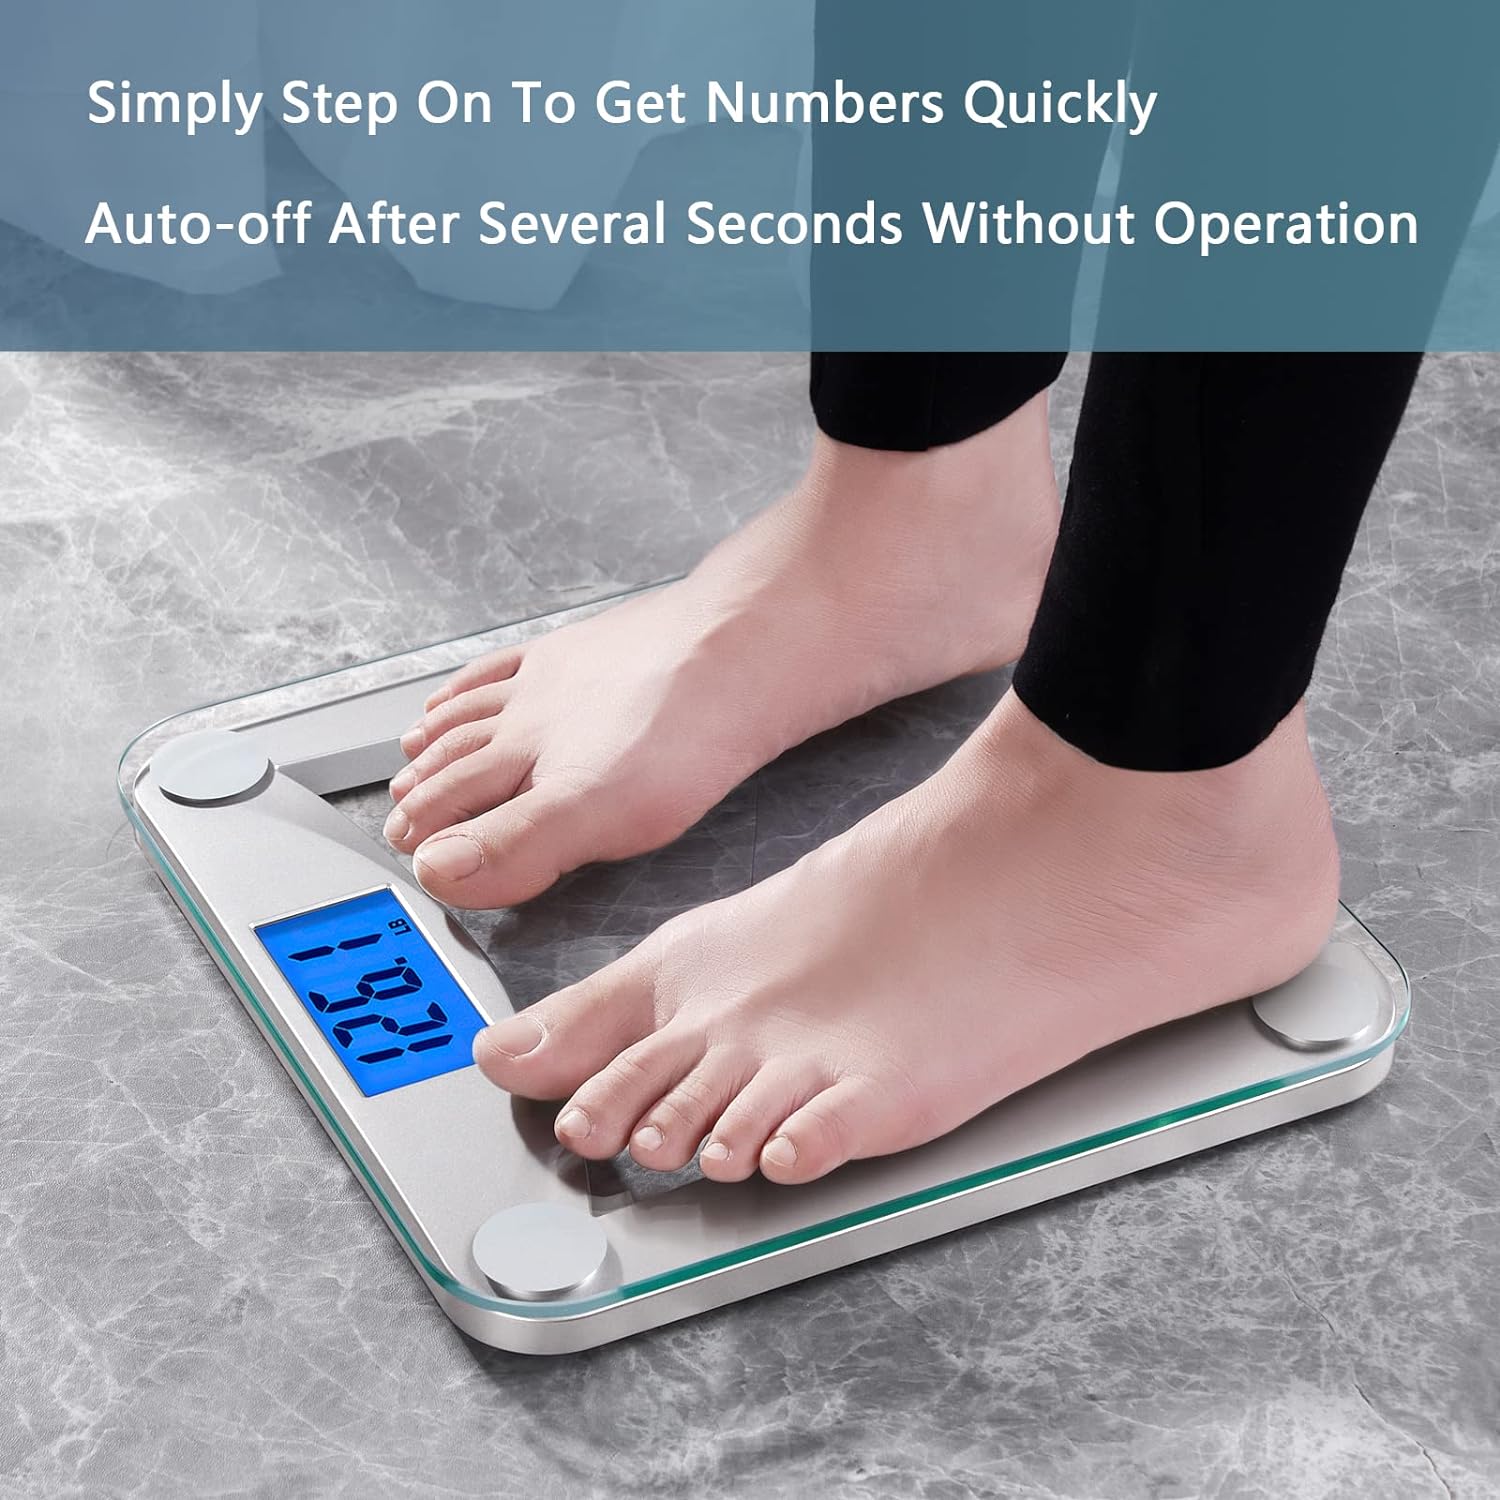 Báscula digital de baño para peso corporal, pesaje profesional desde 2 -  VIRTUAL MUEBLES